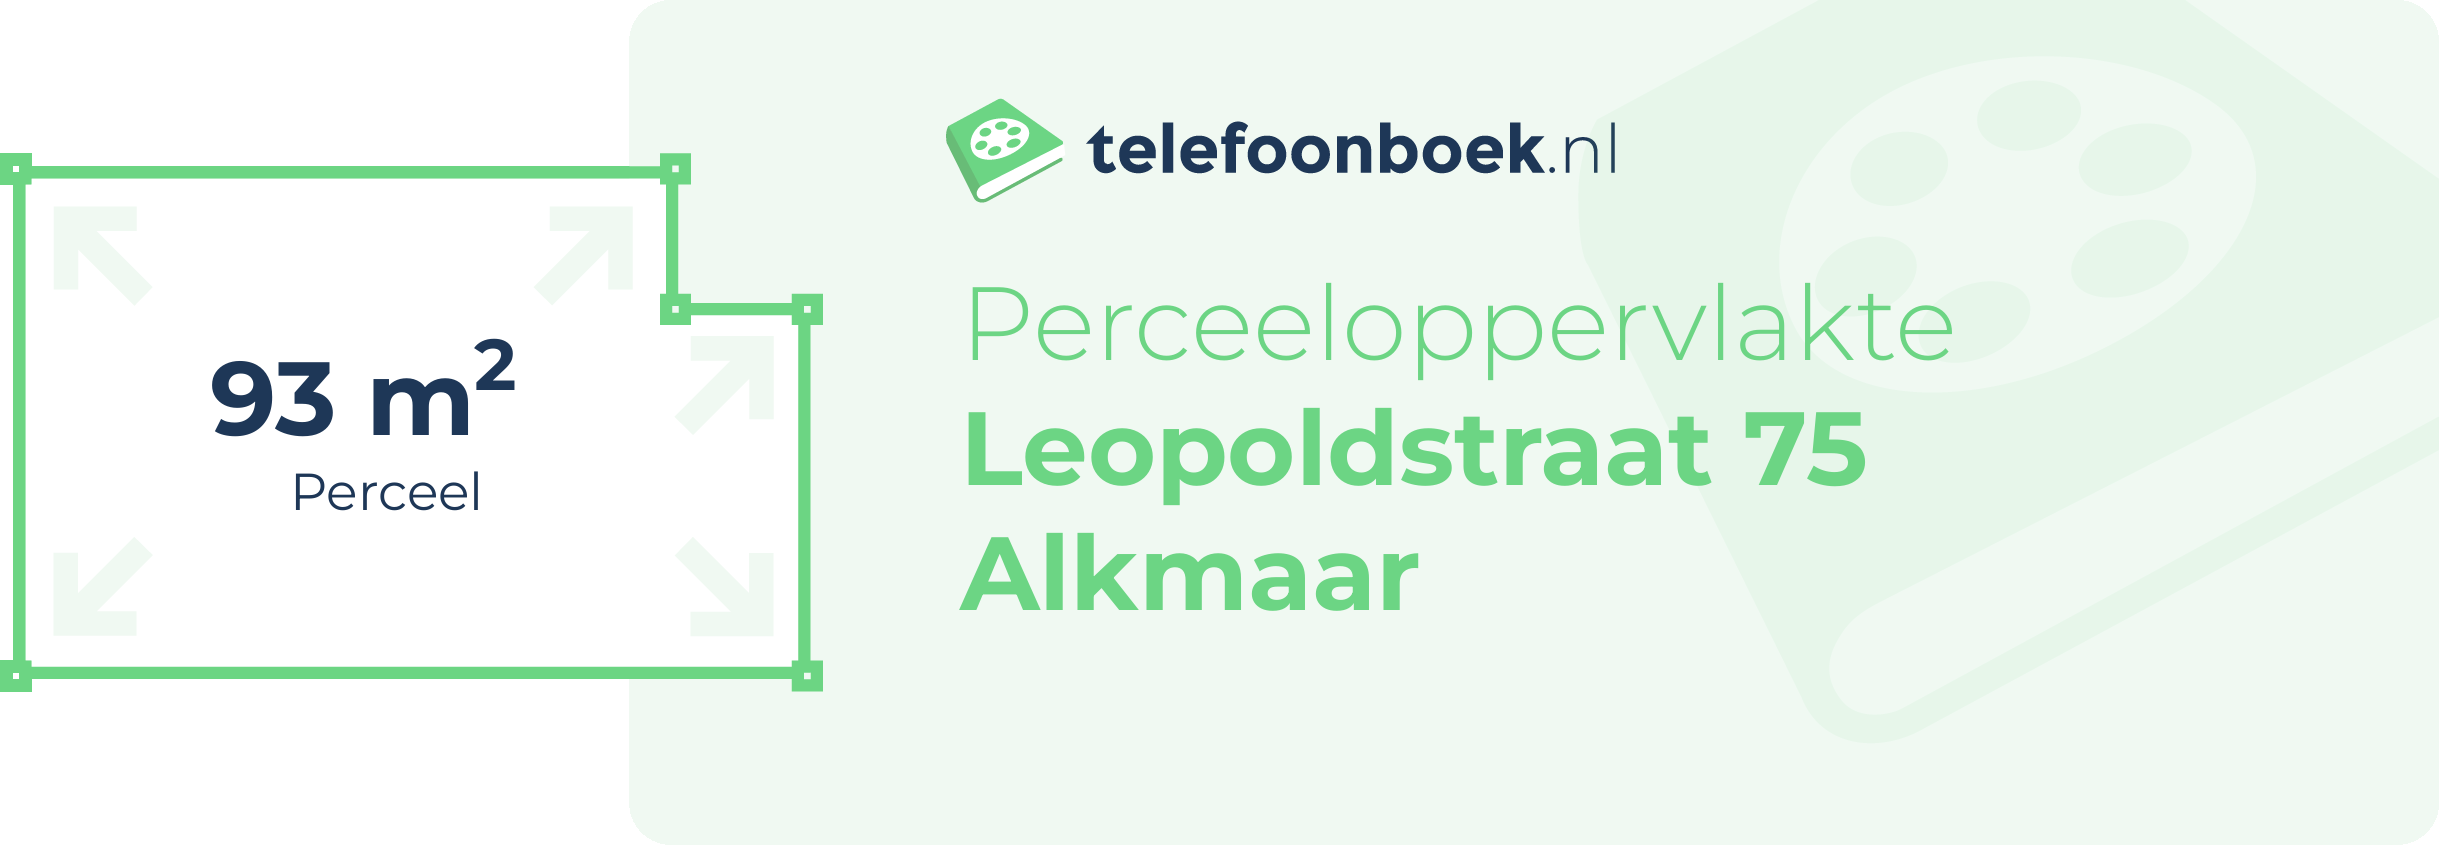 Perceeloppervlakte Leopoldstraat 75 Alkmaar